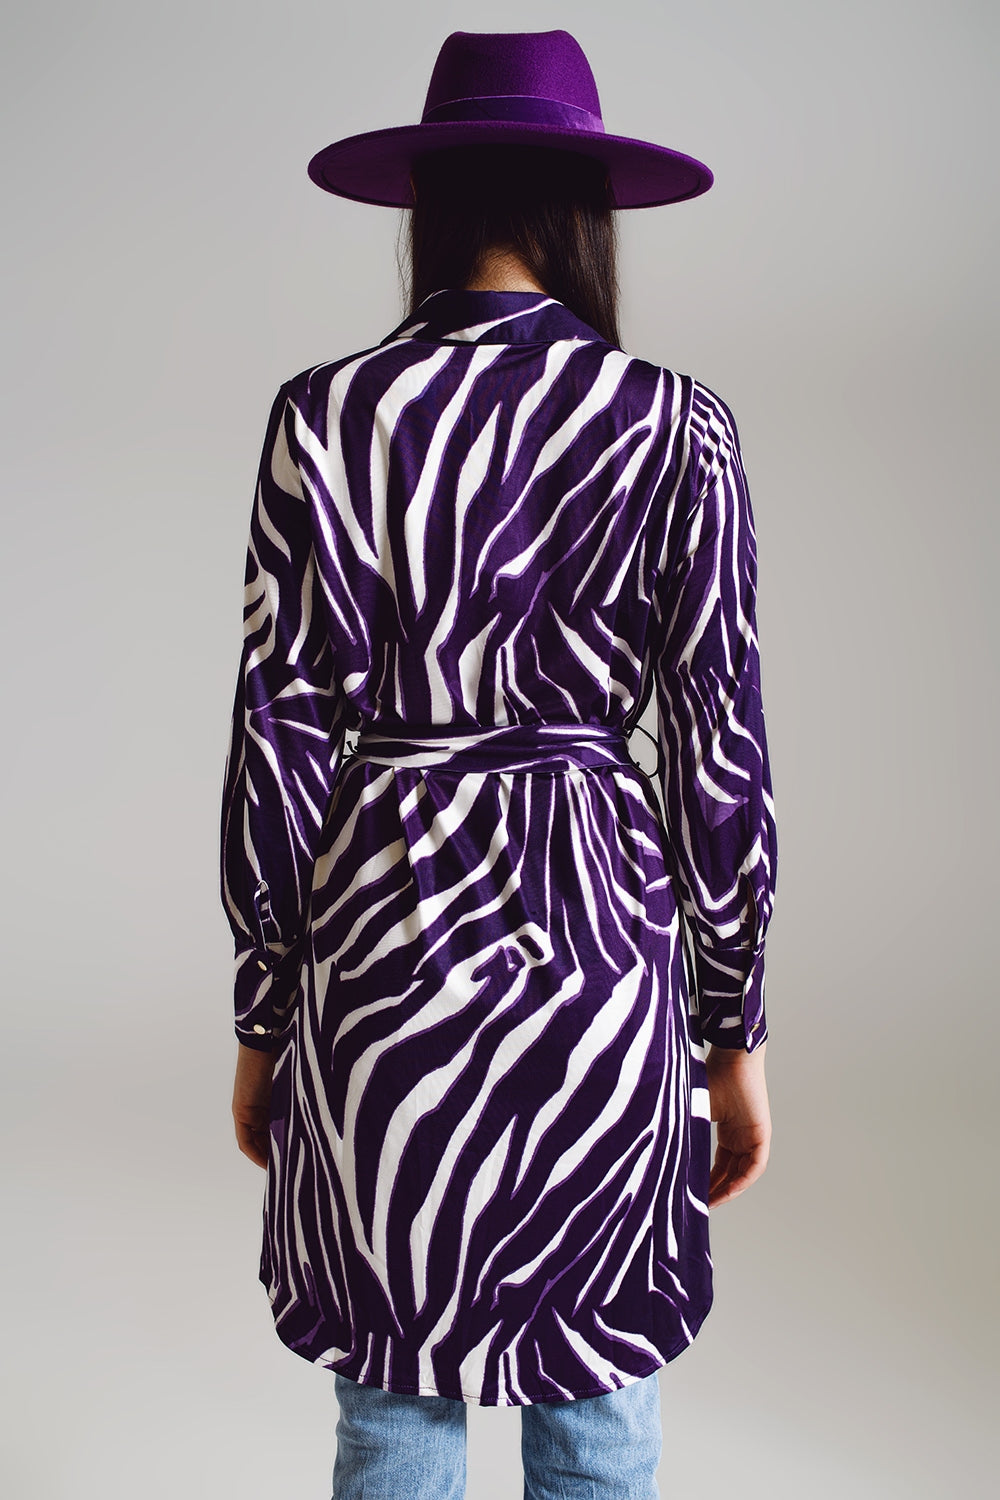 Vestito corto midi con stampa zebrata bianca e viola